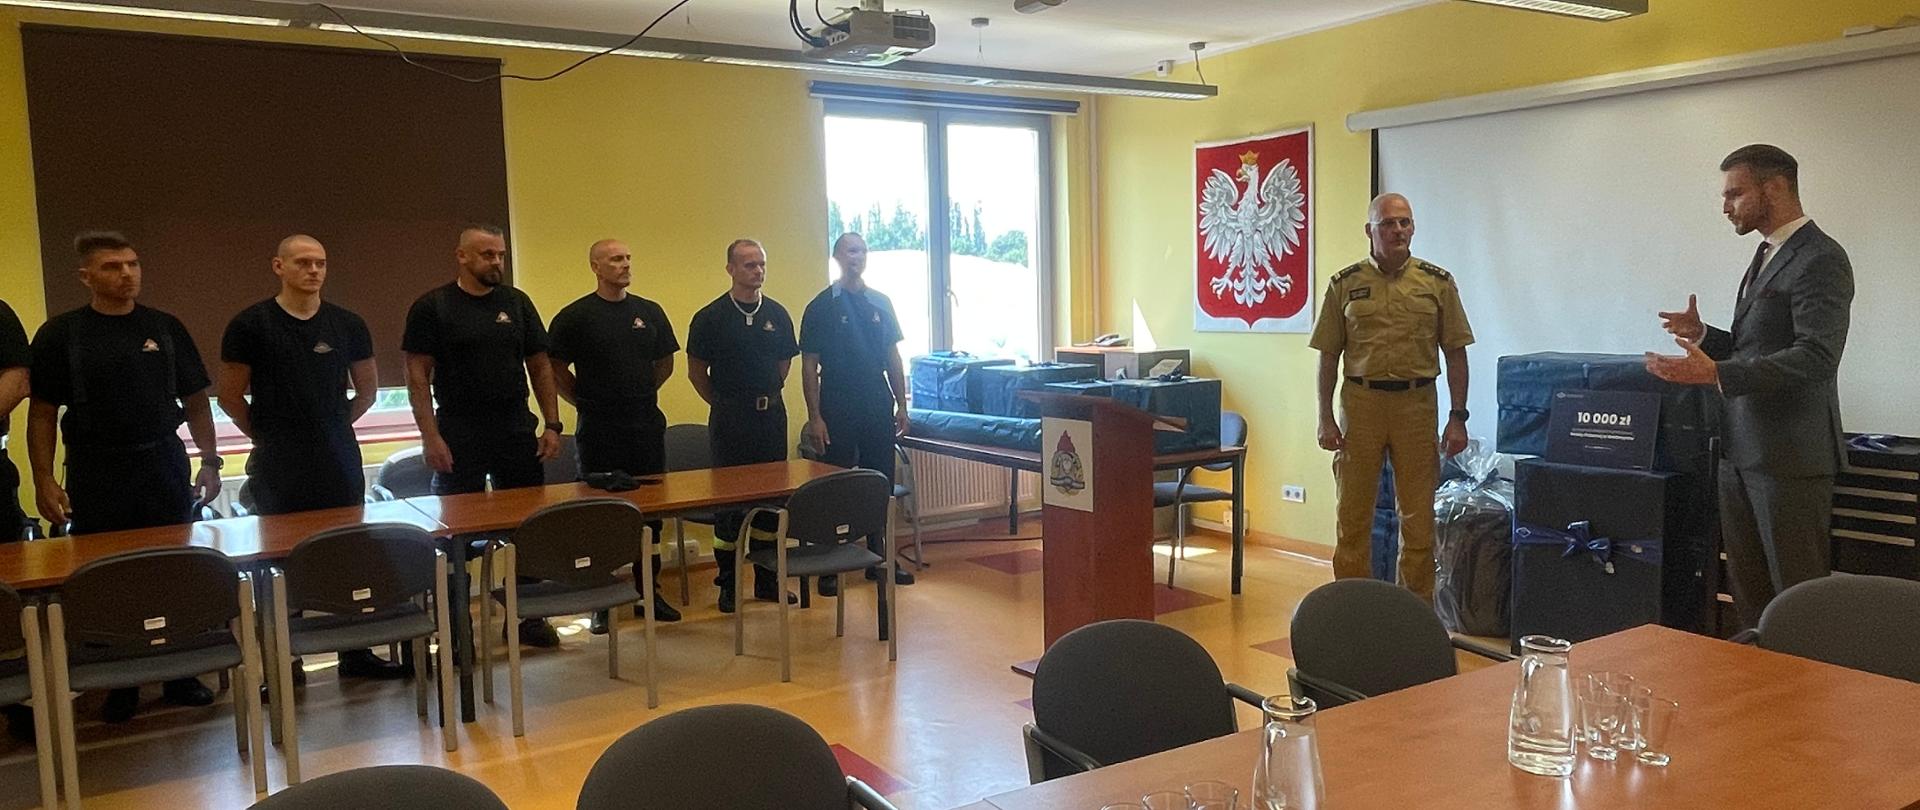 W sali wykładowej Komendy Miejskiej Państwowej Straży Pożarnej w Wałbrzychu. Po lewej stronie przy mównicy stoi w mundurze piaskowym Komendant Miejski PSP w Wałbrzychu, obok w ciemnym garniturze Prezes Wałbrzyskiej Specjalnej Strefy Ekonomicznej. Po lewej stronie przy stole stoją strażacy